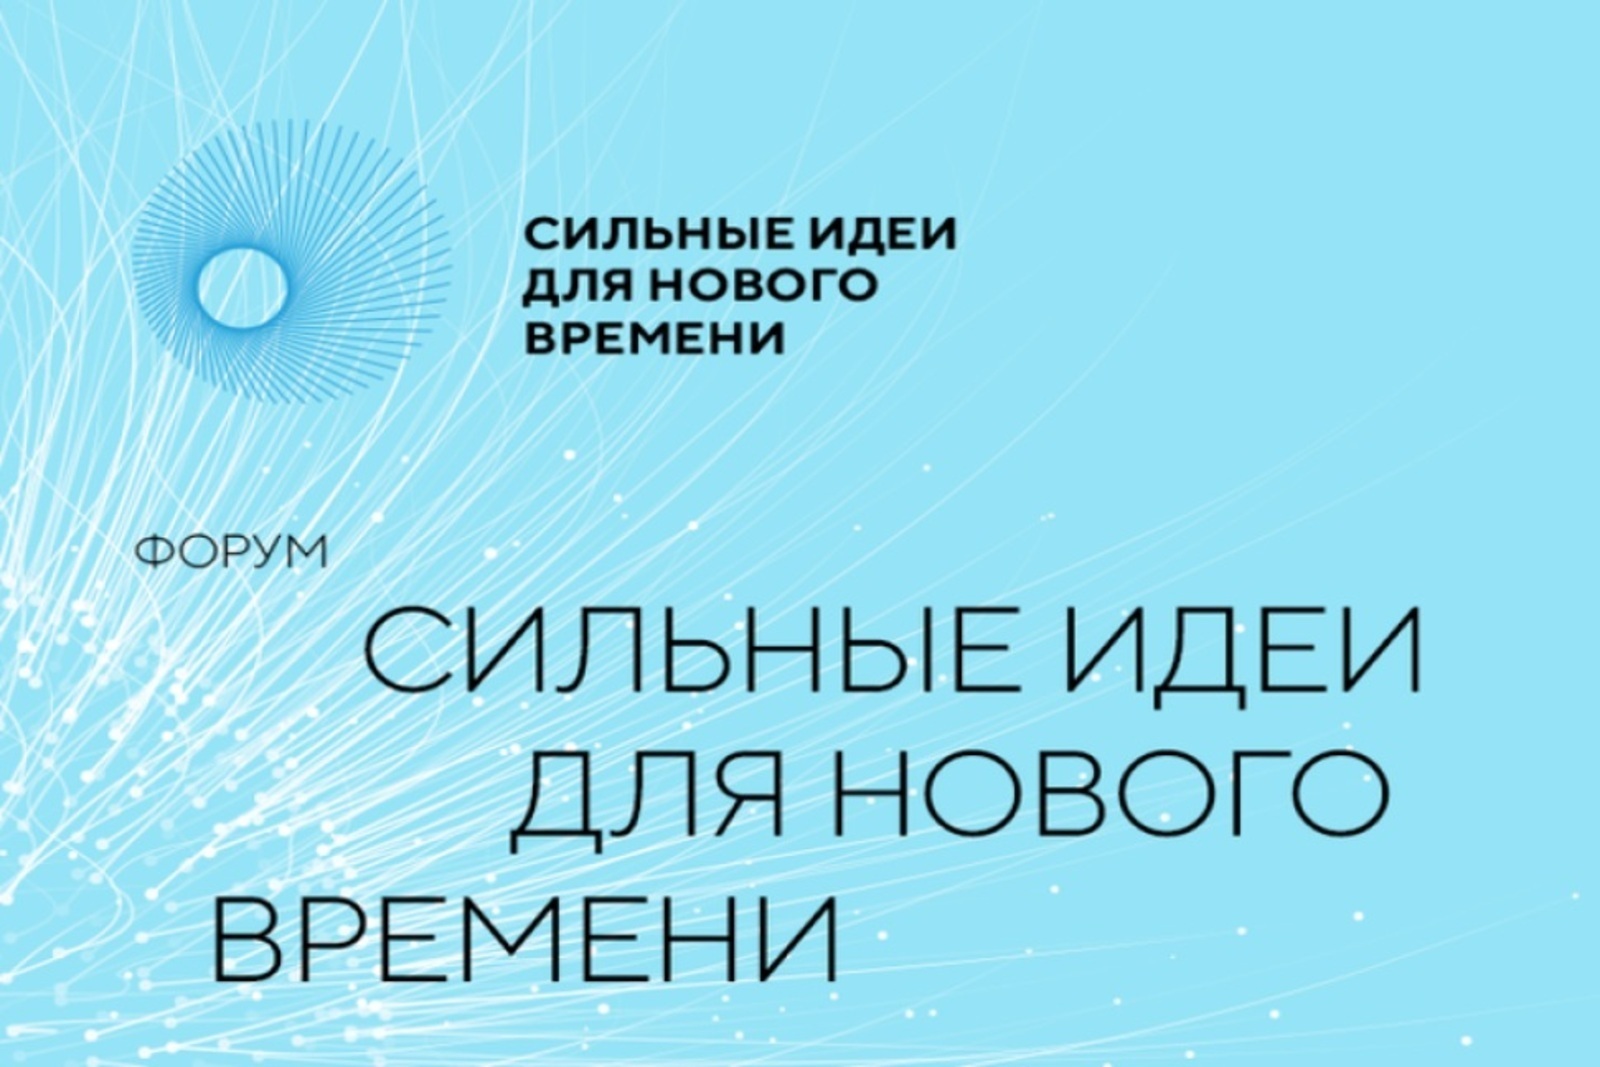 У жителей Башкортостана осталось 4 дня для подачи заявок на участие в форуме «Сильные идеи для нового времени»